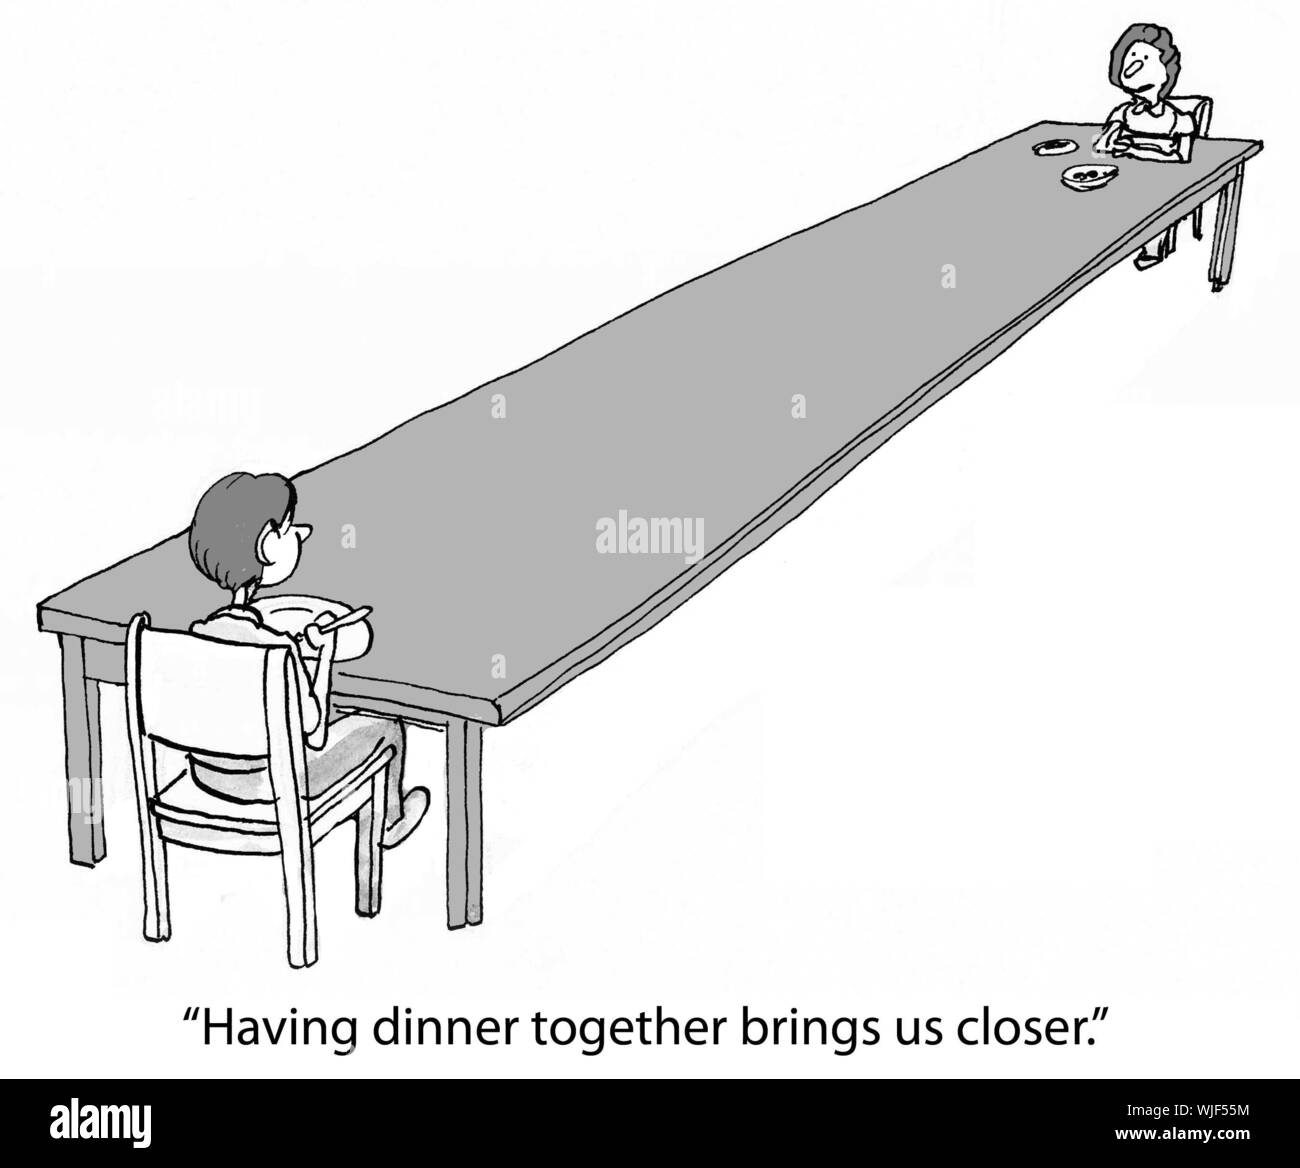 "Abendessen zusammen mit uns näher bringt." Stockfoto